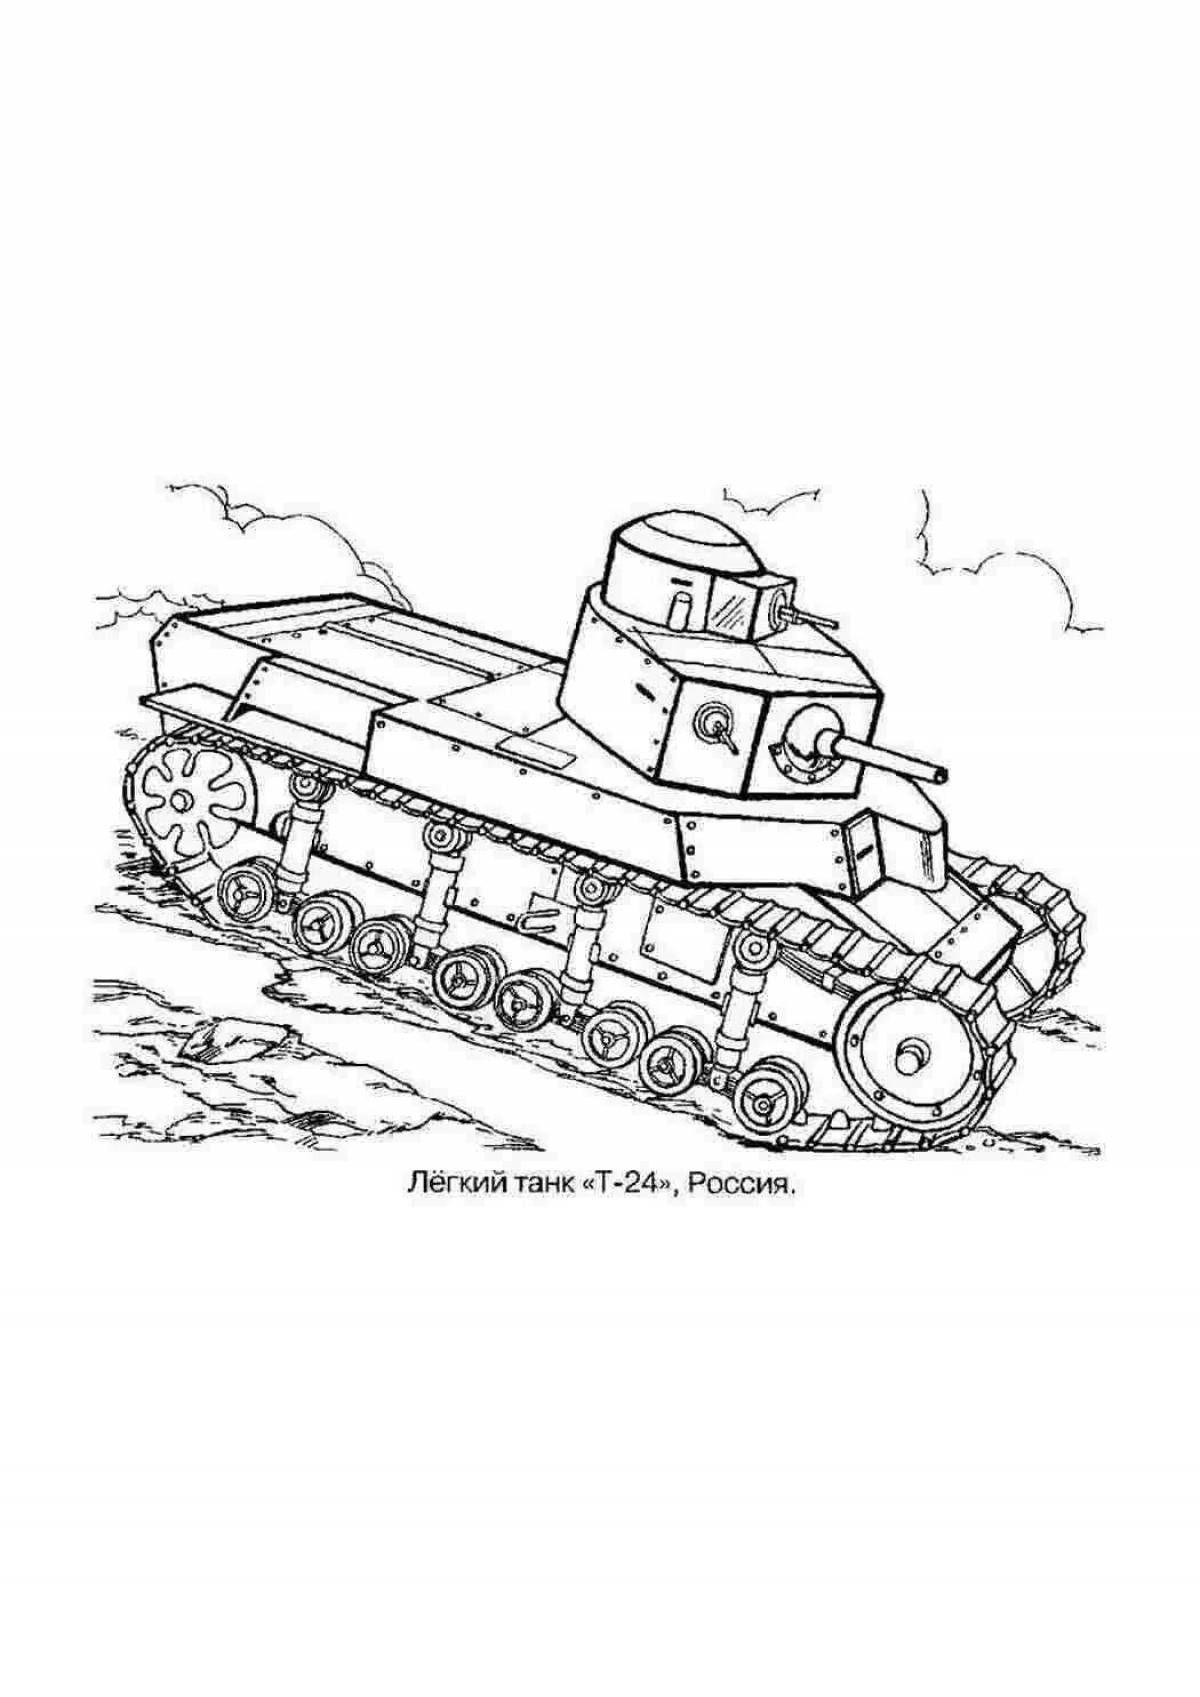 Wonderful kv44 tank coloring book